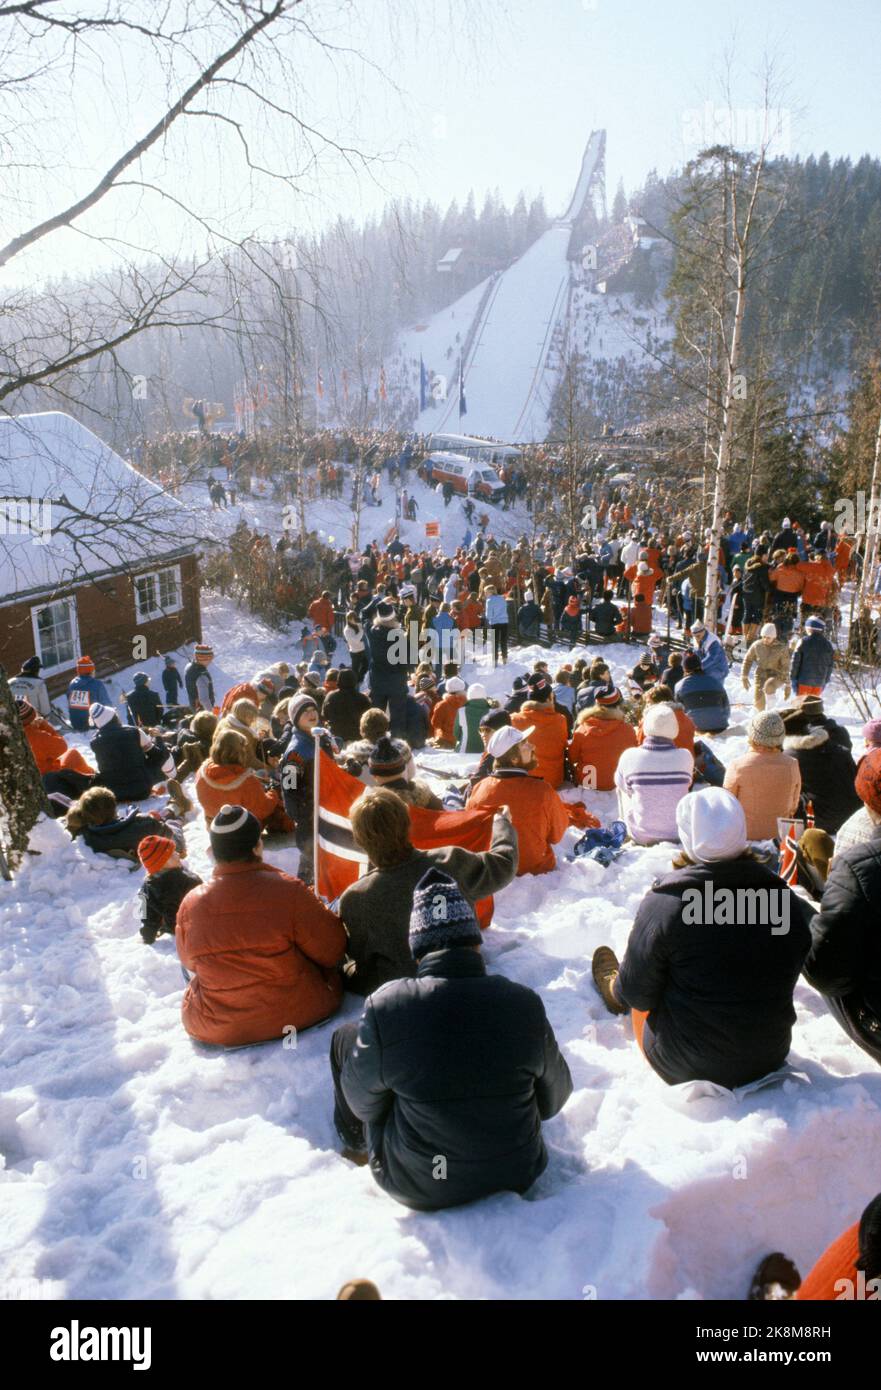 Oslo 198202: Ski-Wm. Springen, Midtstubakken. Das Publikum im Vordergrund. Foto: Henrik Laurvik / NTB Stockfoto